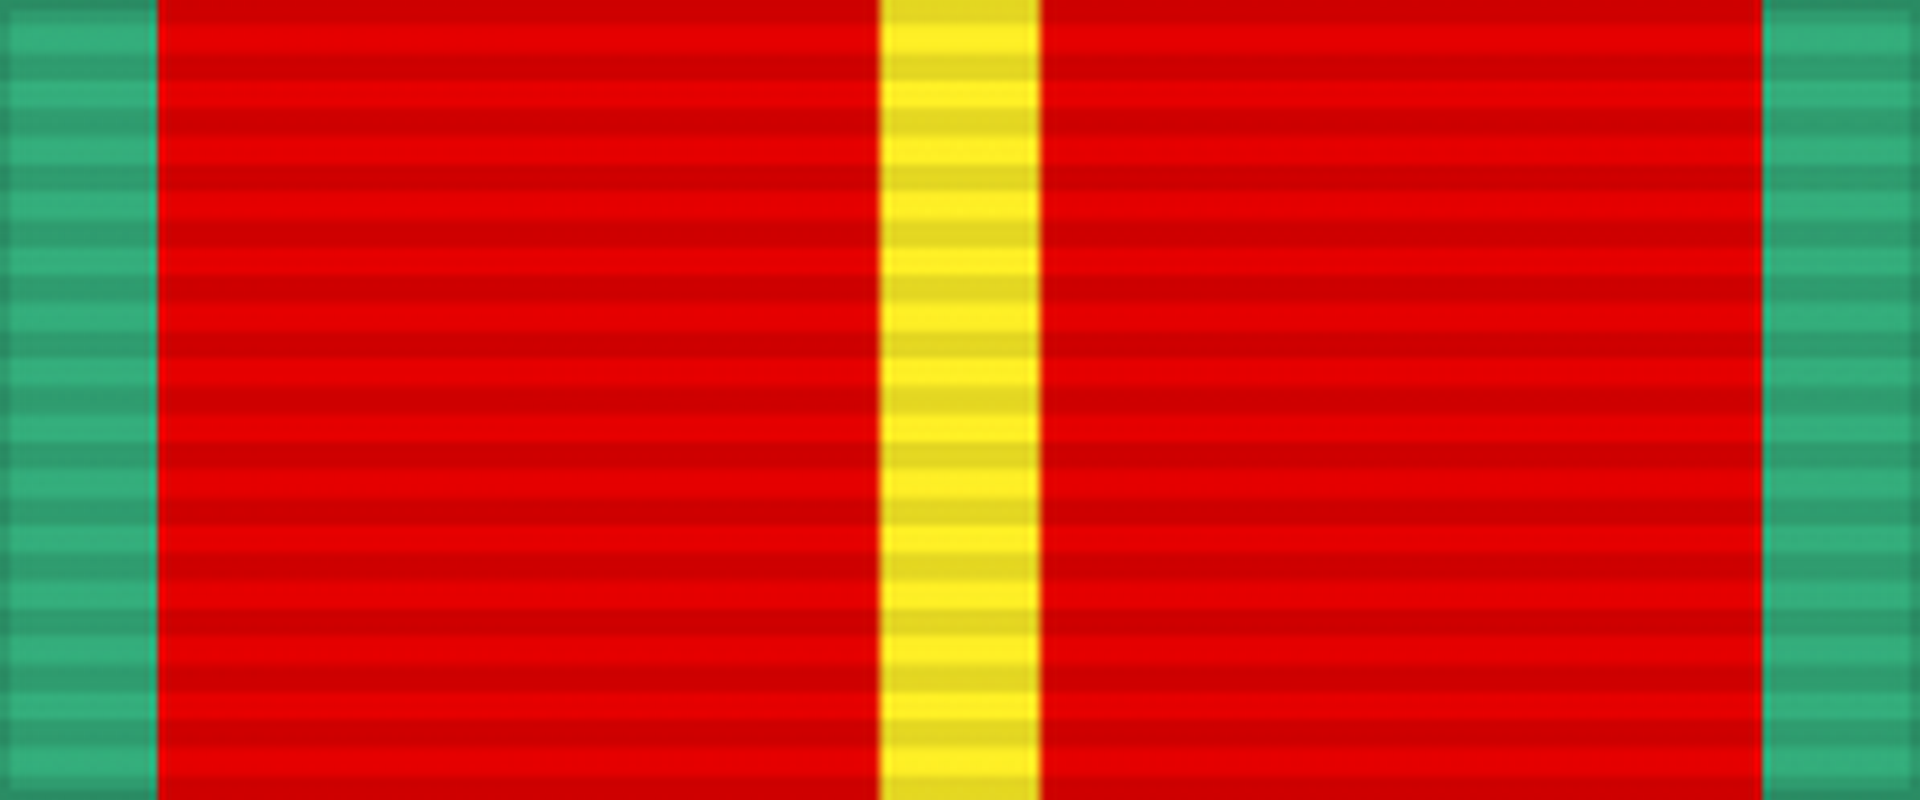 Лента медали «За безупречную службу» 1-й степени (20 лет). СССР.